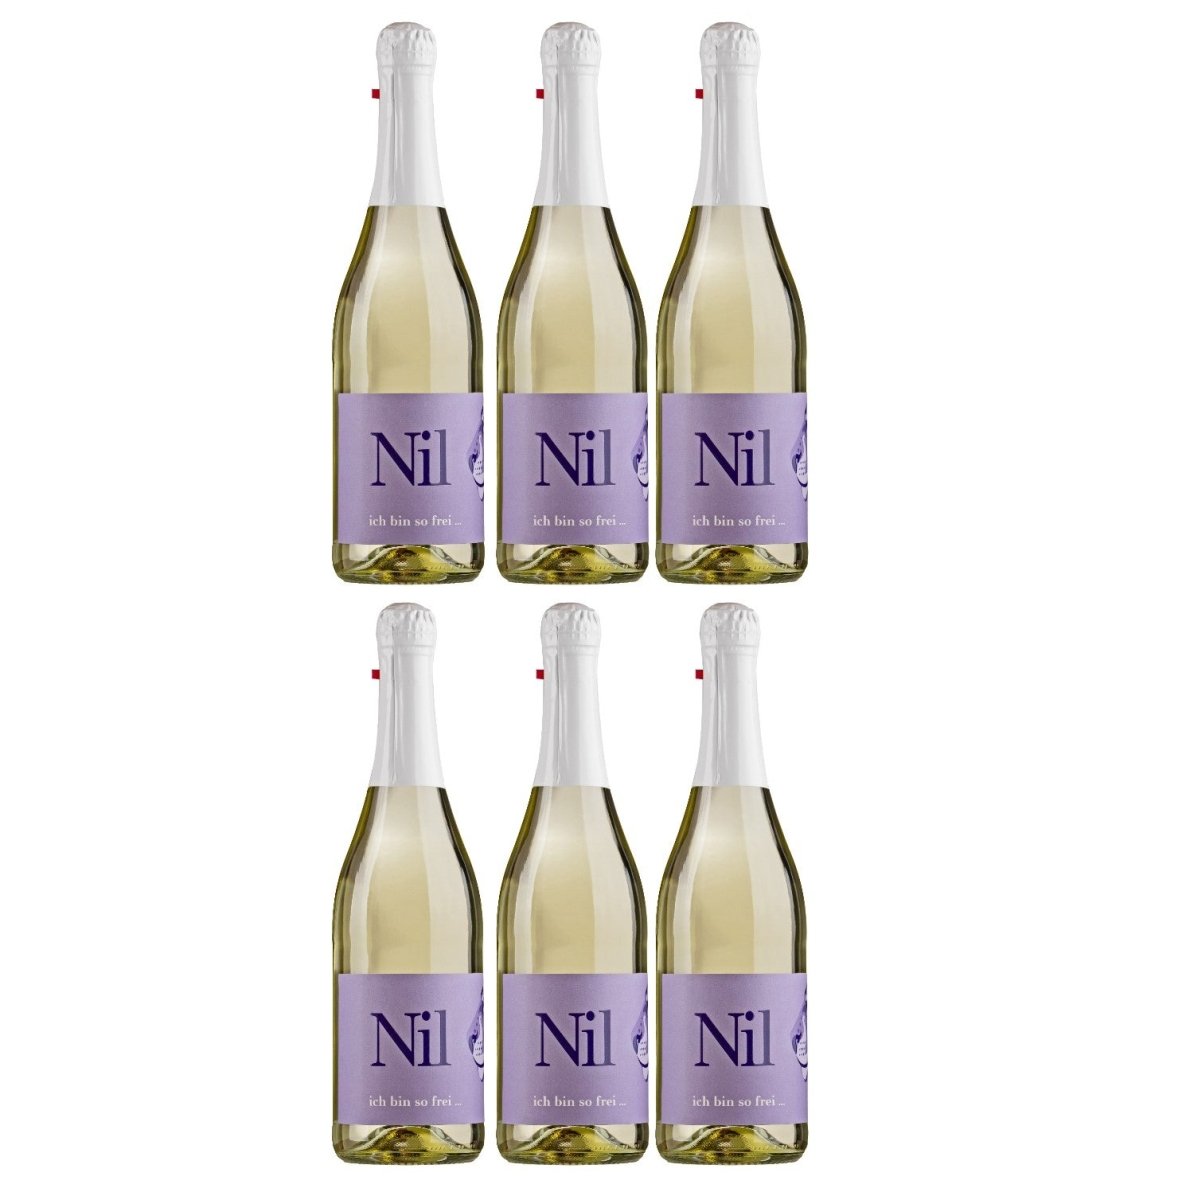 Weinhaus am Nil, Nil alkoholfrei, Schäumendes Getränk aus entalkoholisiertem Wein Deutschland (6 x 0,75 l) - Versanel - 